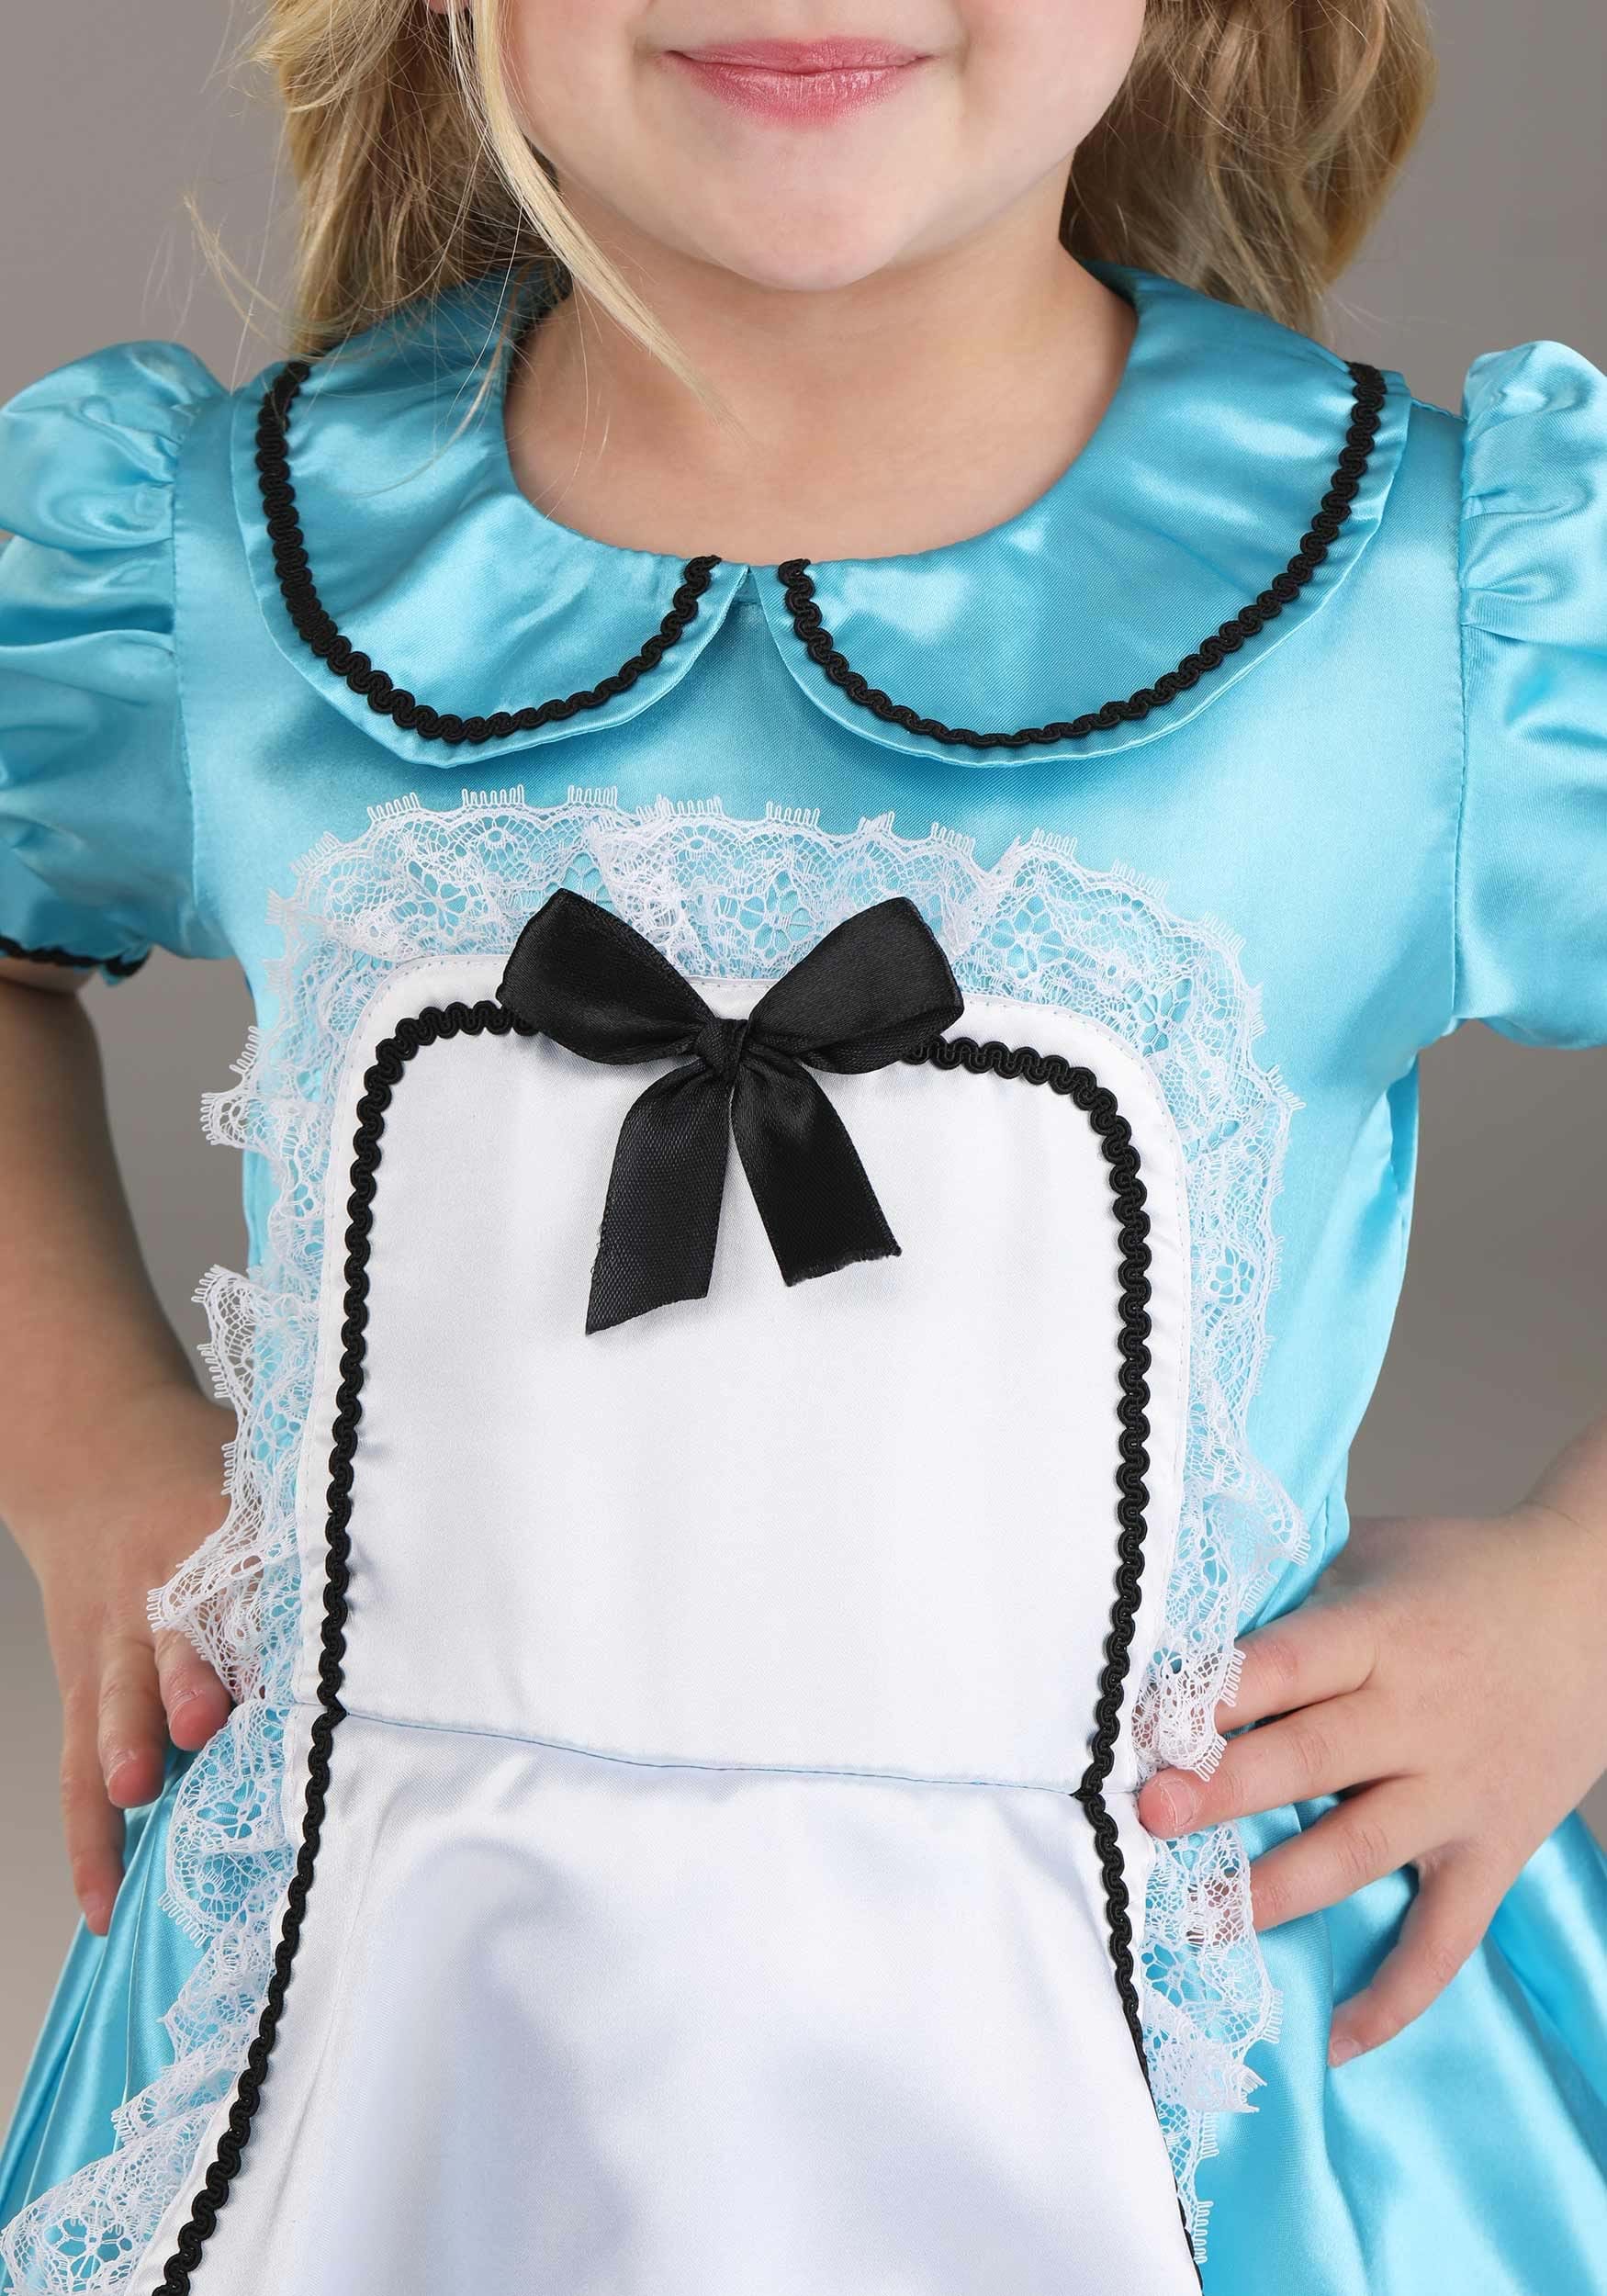 Toddler Adventurous Alice Costume